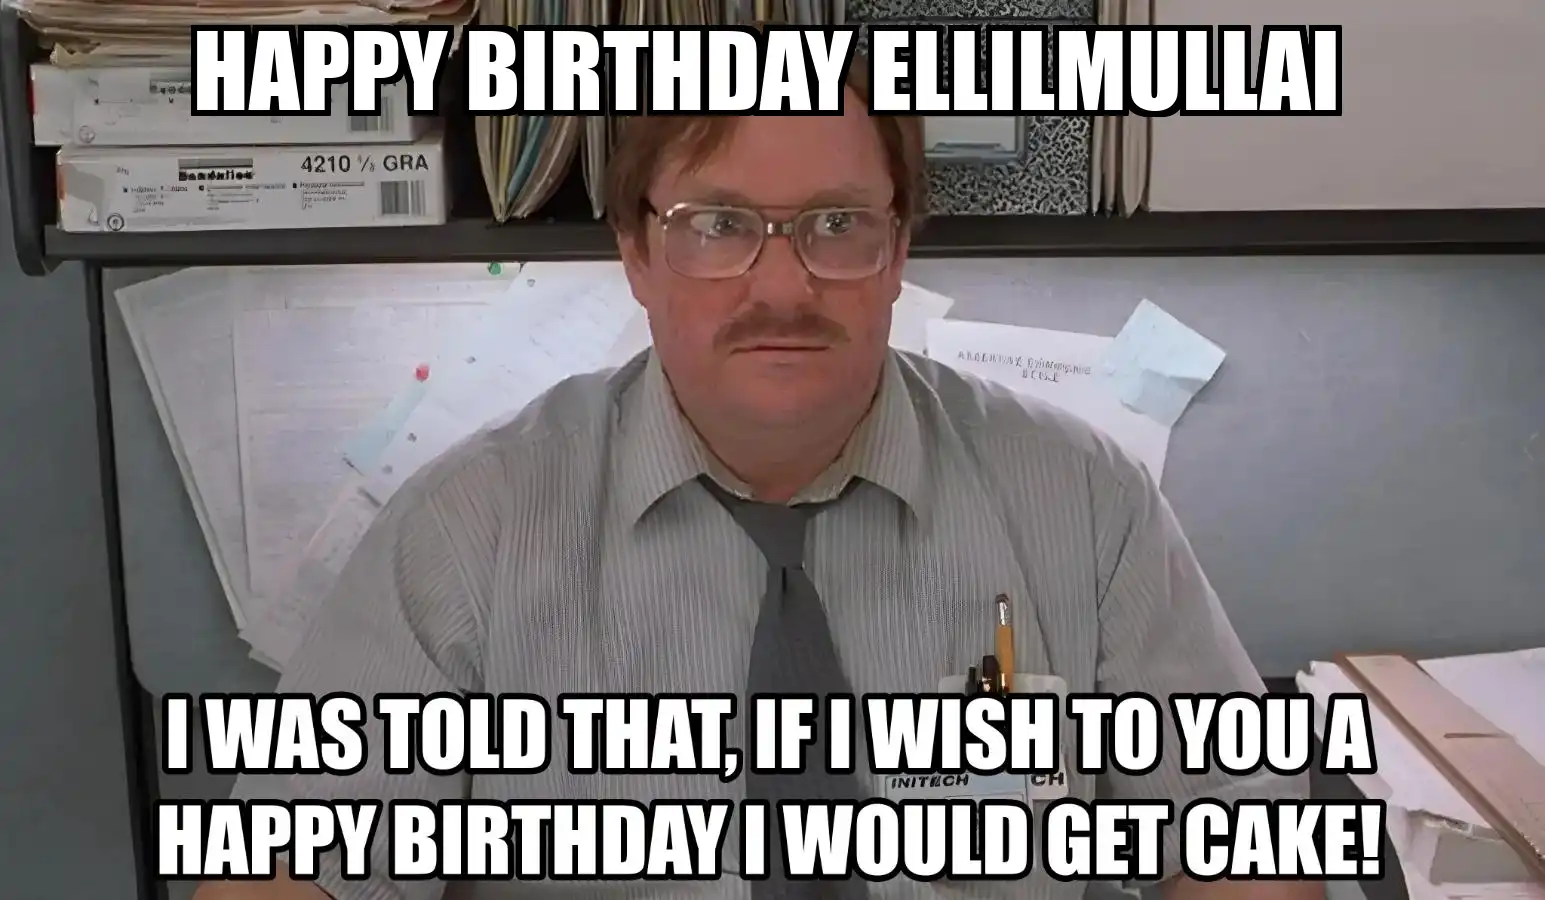 Happy Birthday Ellilmullai I Would Get A Cake Meme